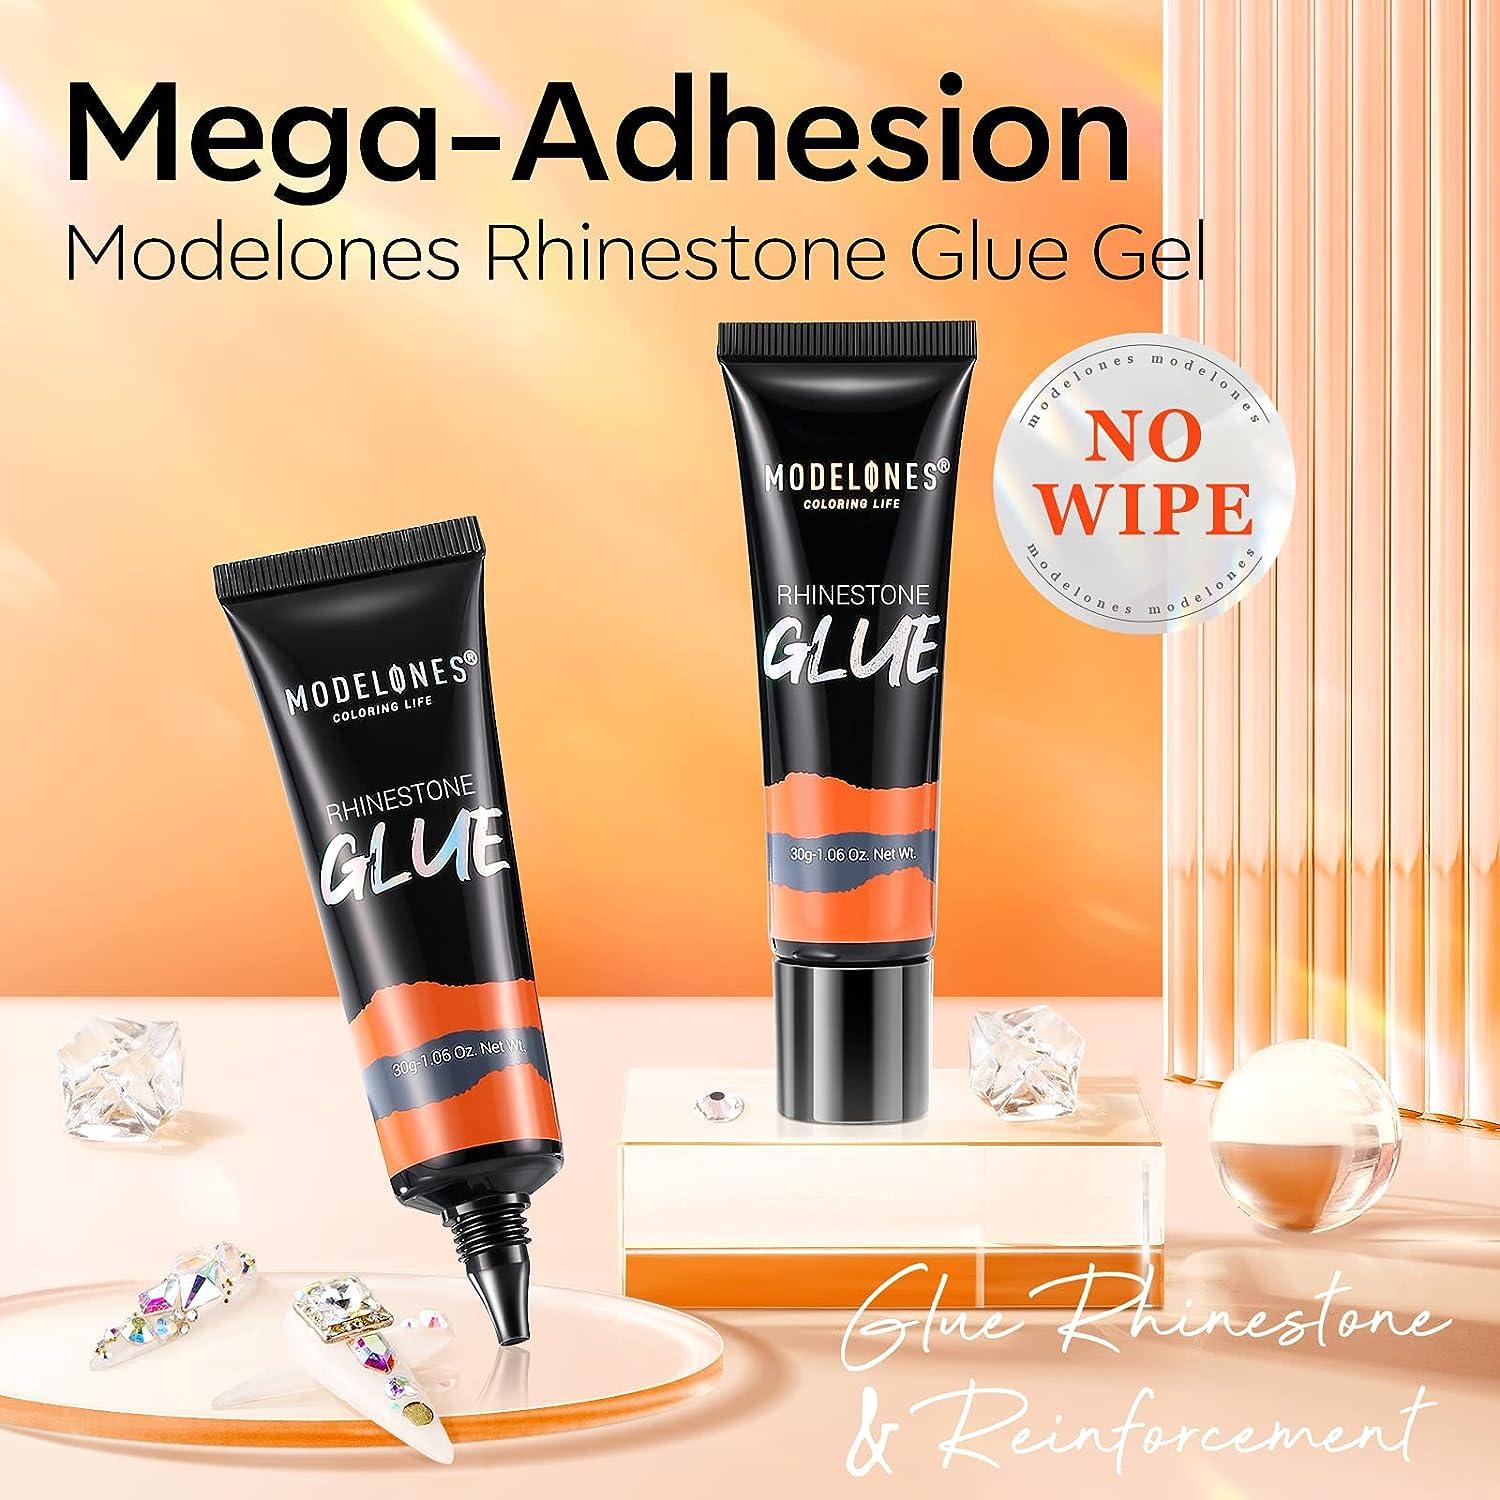 Rhinestone Glue